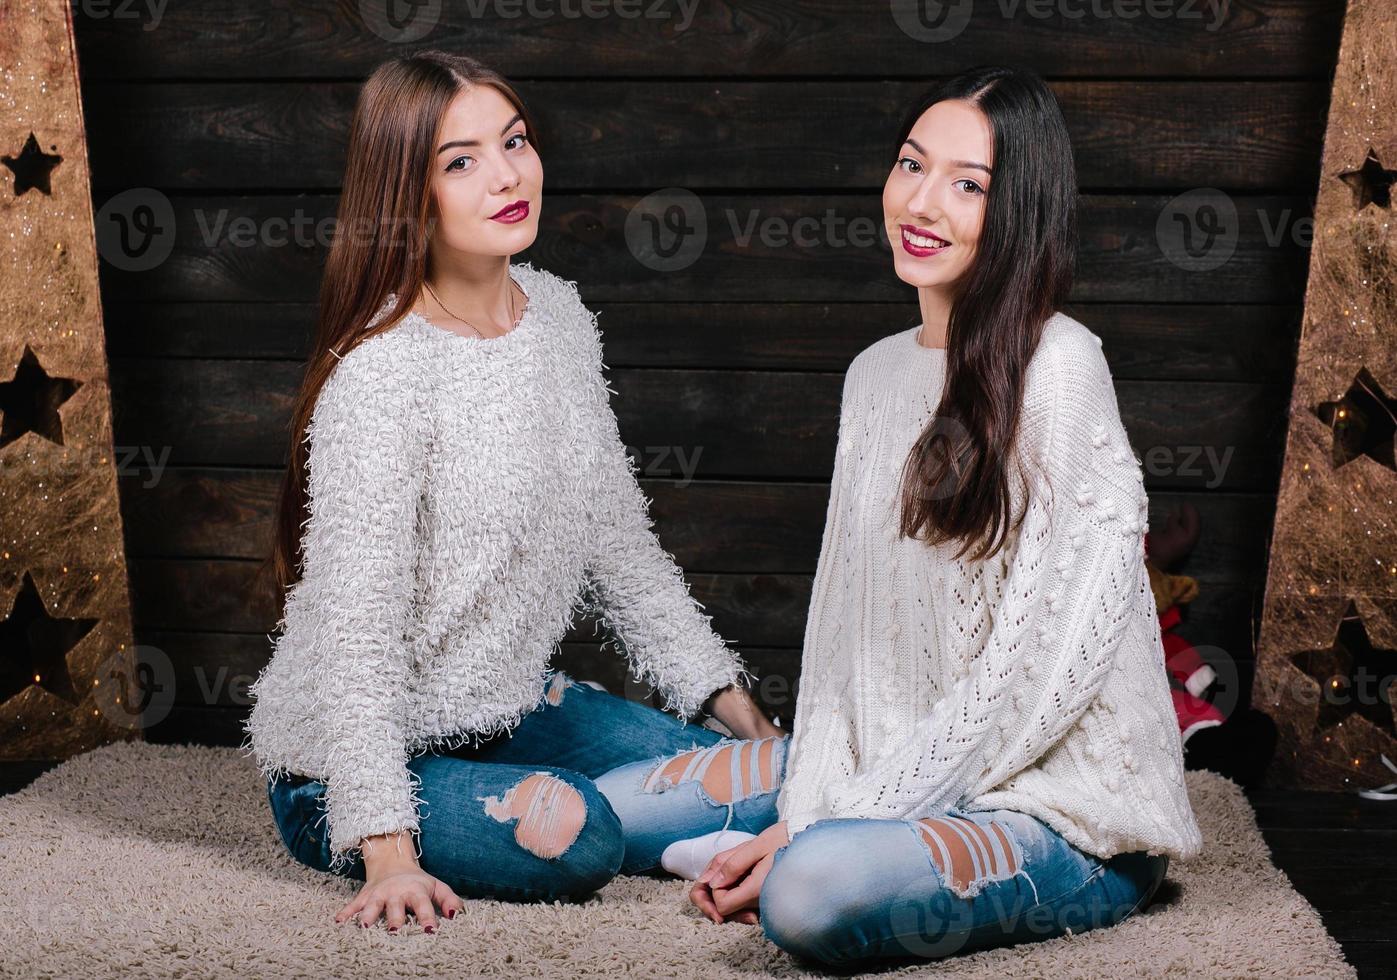 duas lindas garotas sentadas no chão foto